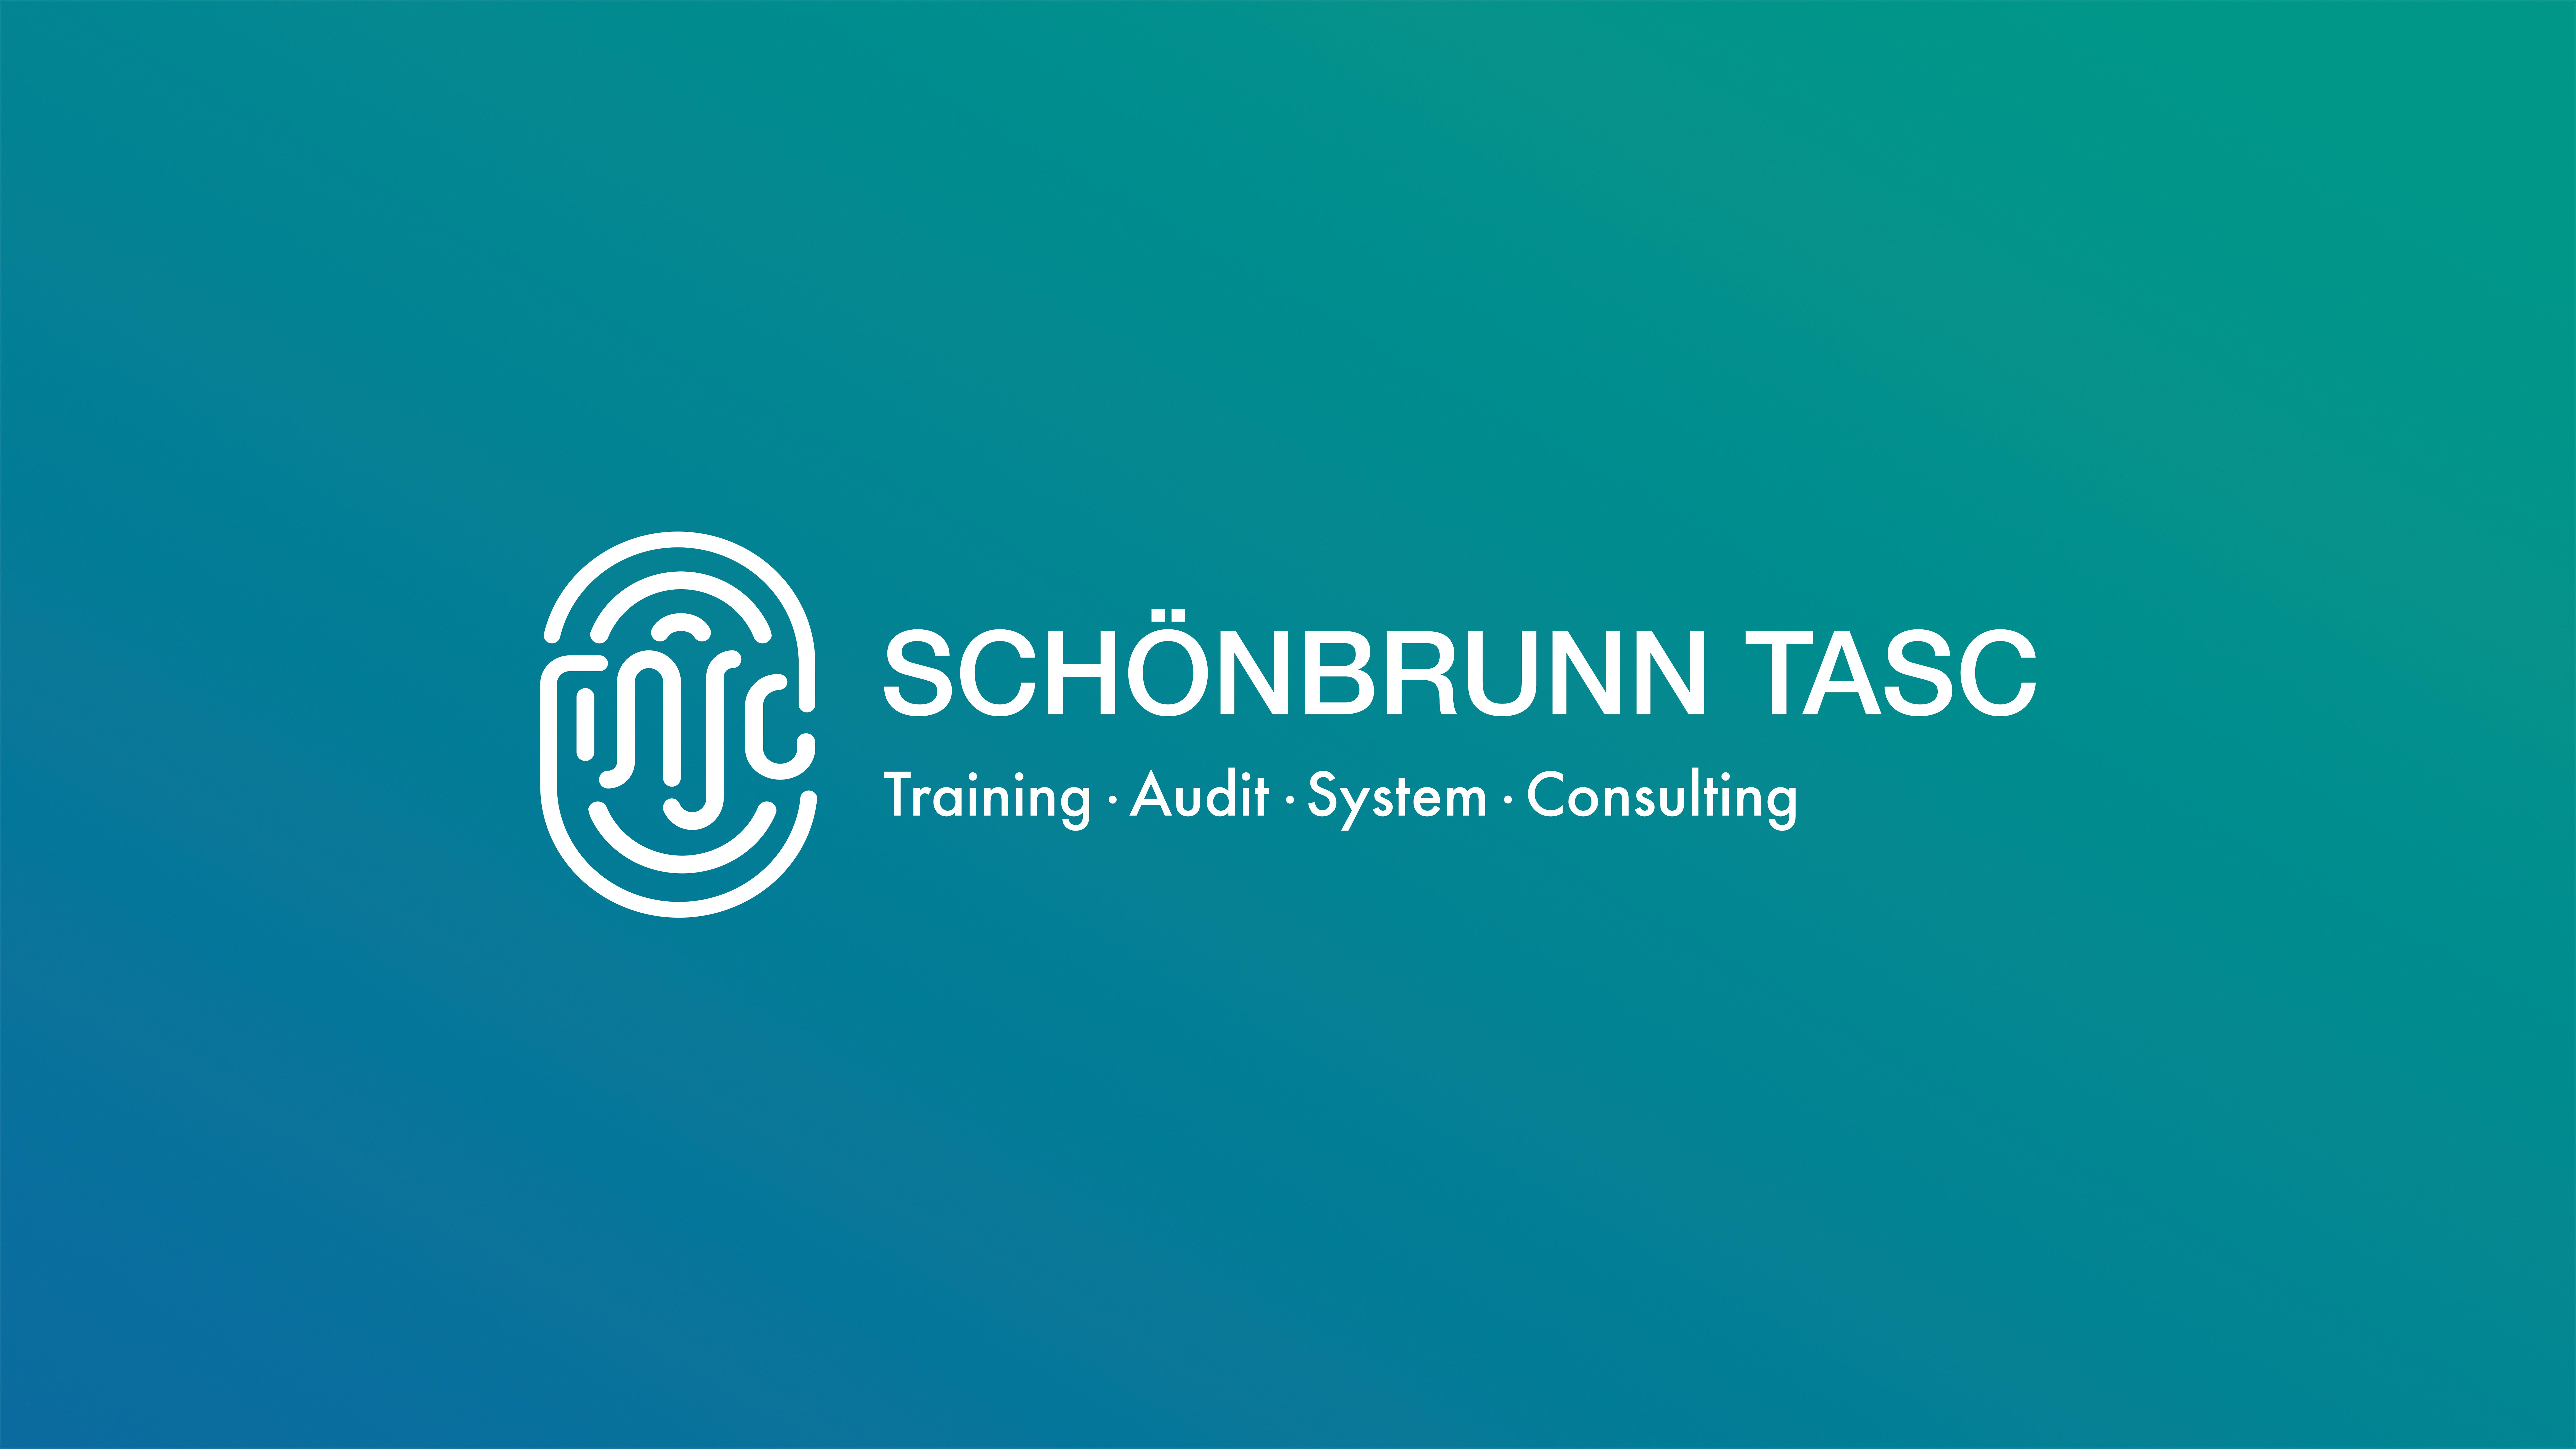 Schönbrunn TASC